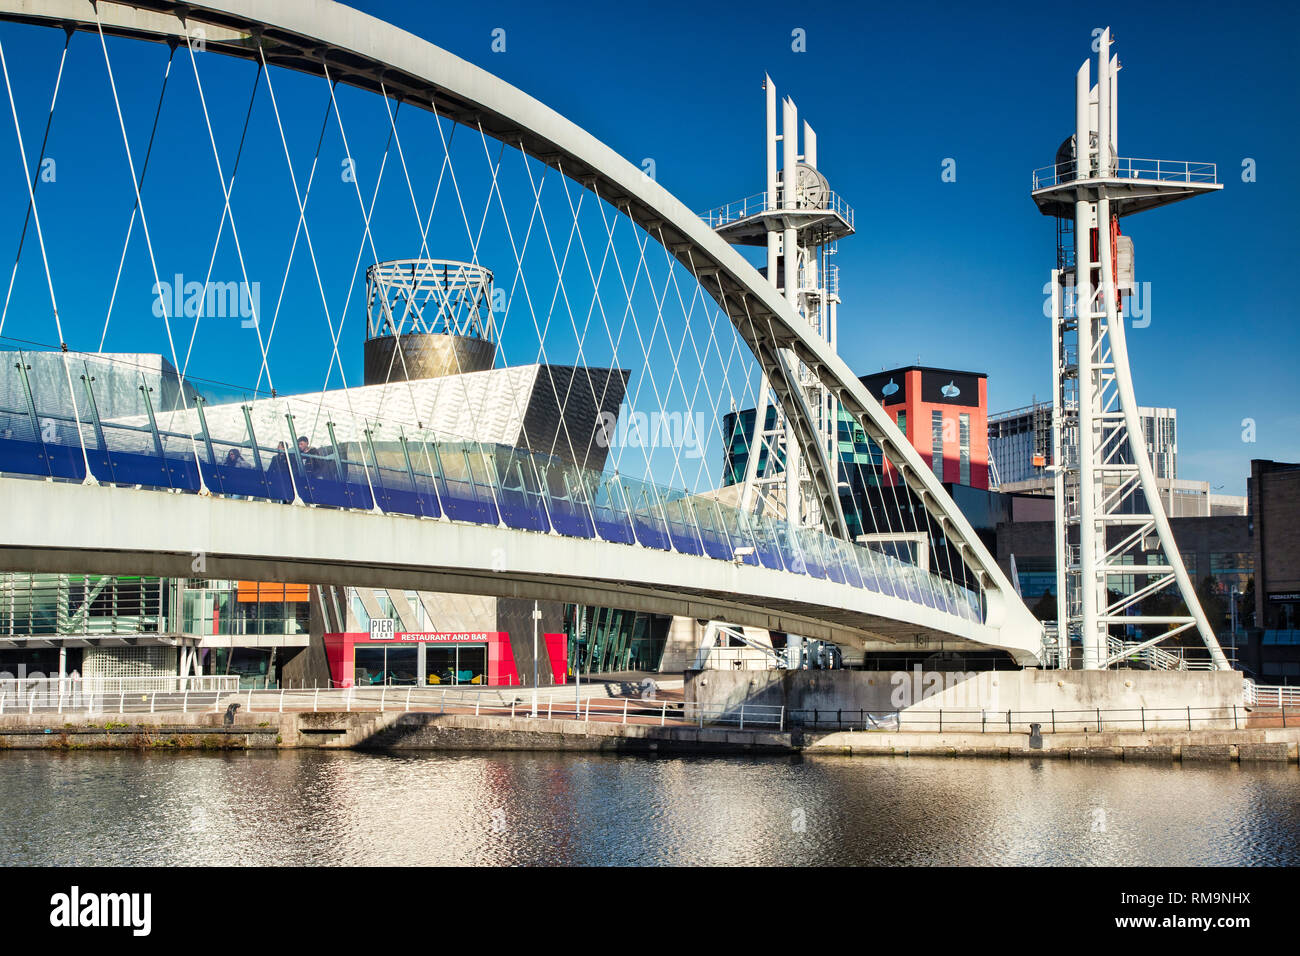 2 novembre 2018 : les quais de Salford, Manchester, UK - Le Pont Lowry sur une belle journée ensoleillée d'automne, avec ciel bleu clair. Banque D'Images